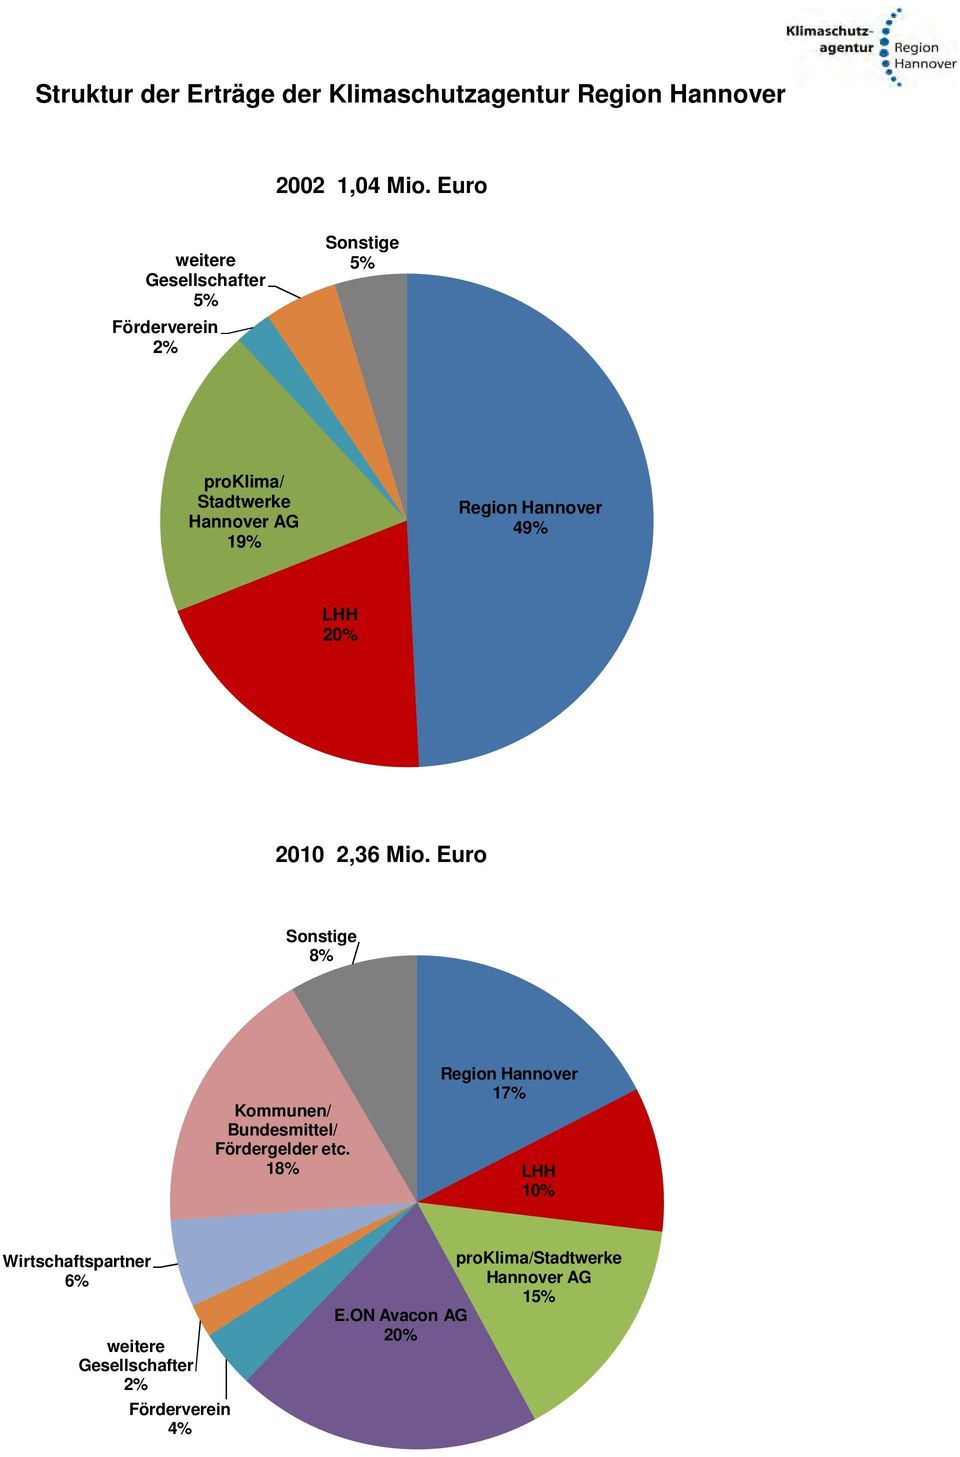 Hannover 49% LHH 20% 2010 2,36 Mio. Euro Sonstige 8% Kommunen/ Bundesmittel/ Fördergelder etc.